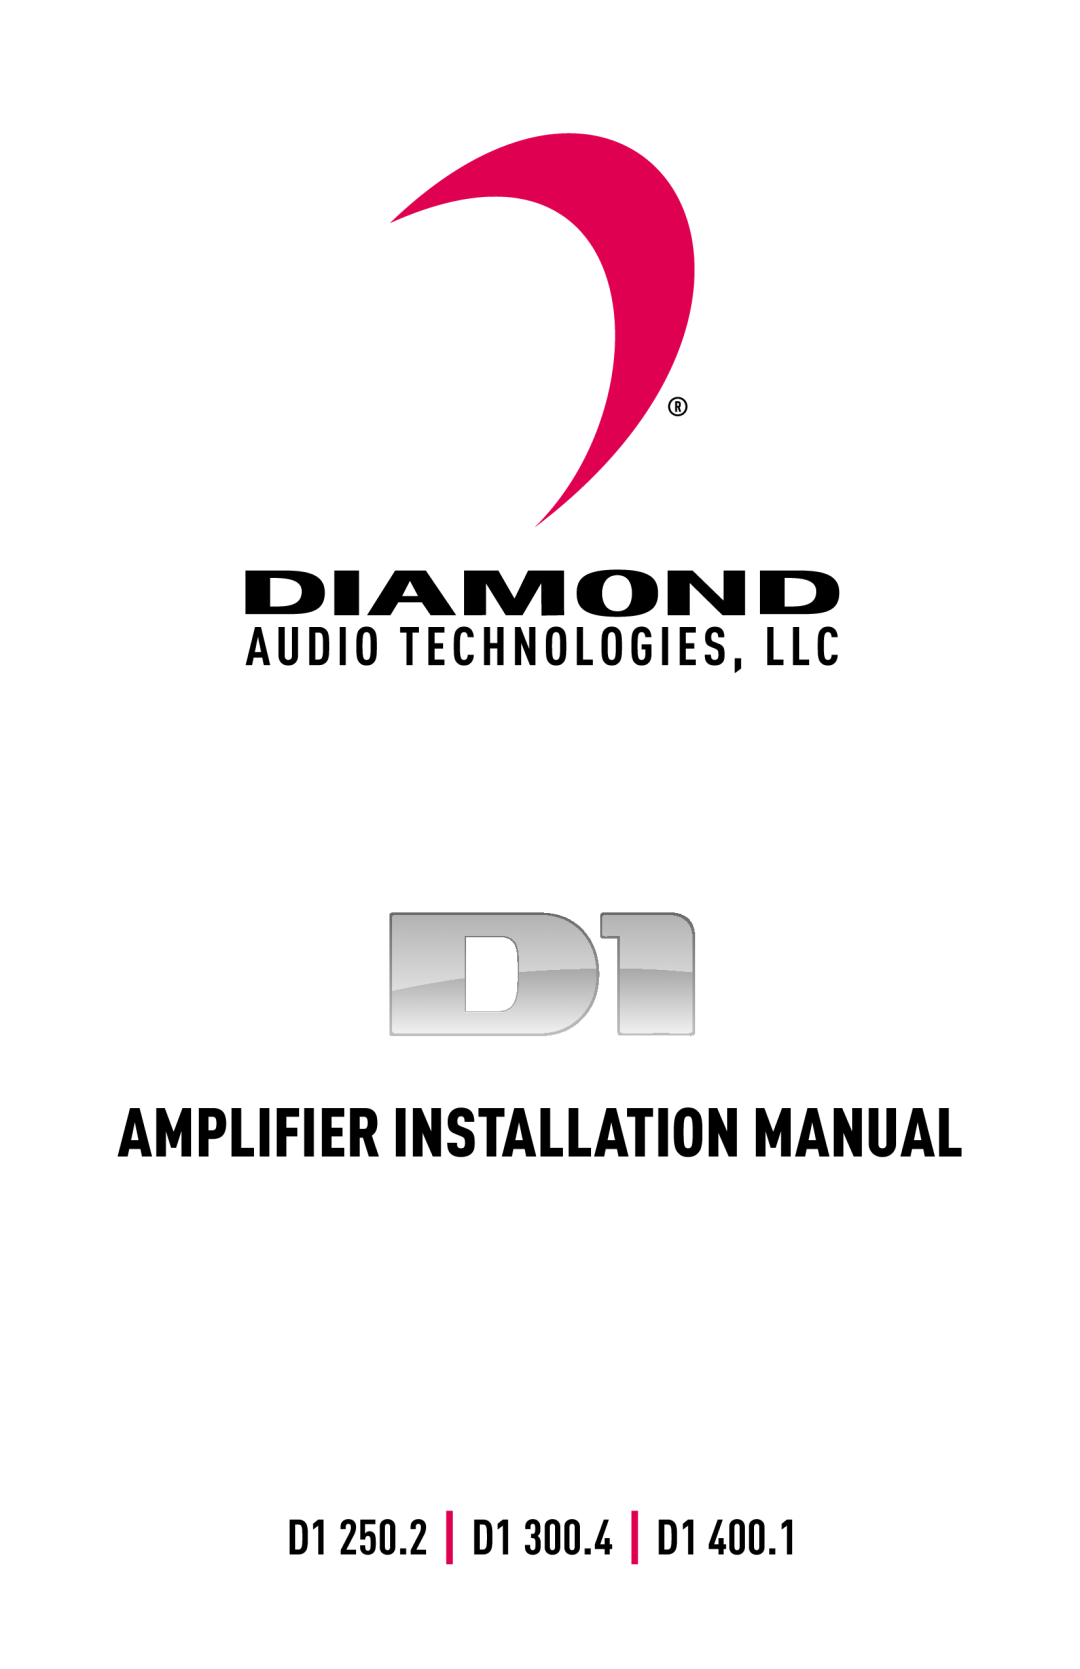 Diamond Audio Technology D1 400.1 installation manual Amplifier Installation Manual, D1 250.2 D1 300.4 D1 